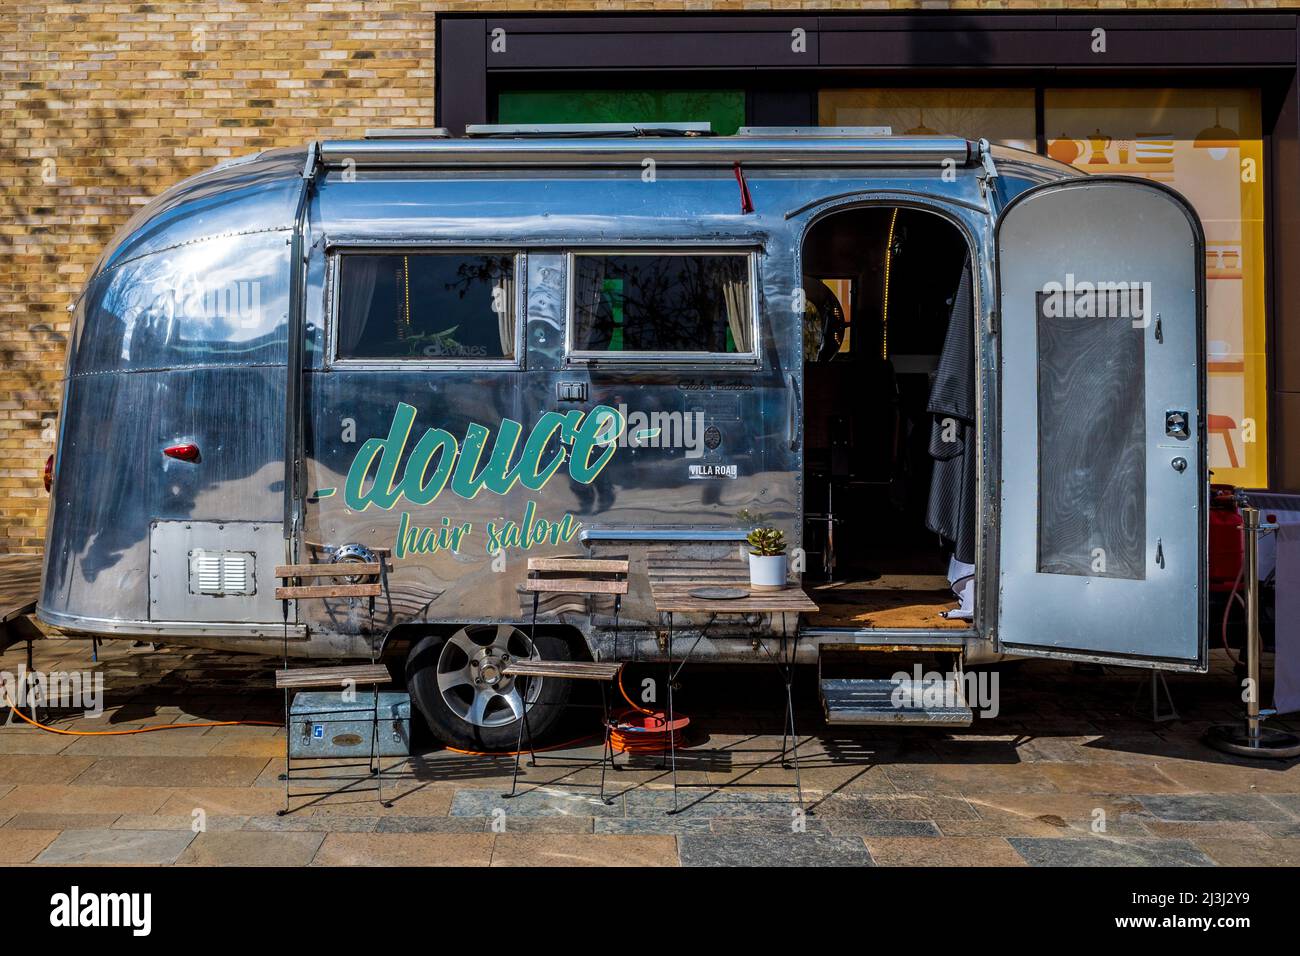 Salon de coiffure mobile - salon de coiffure mobile - Maison de coiffure mobile à Cambridge au Royaume-Uni, fonctionnant à partir d'une bande-annonce Airstream classique. Banque D'Images